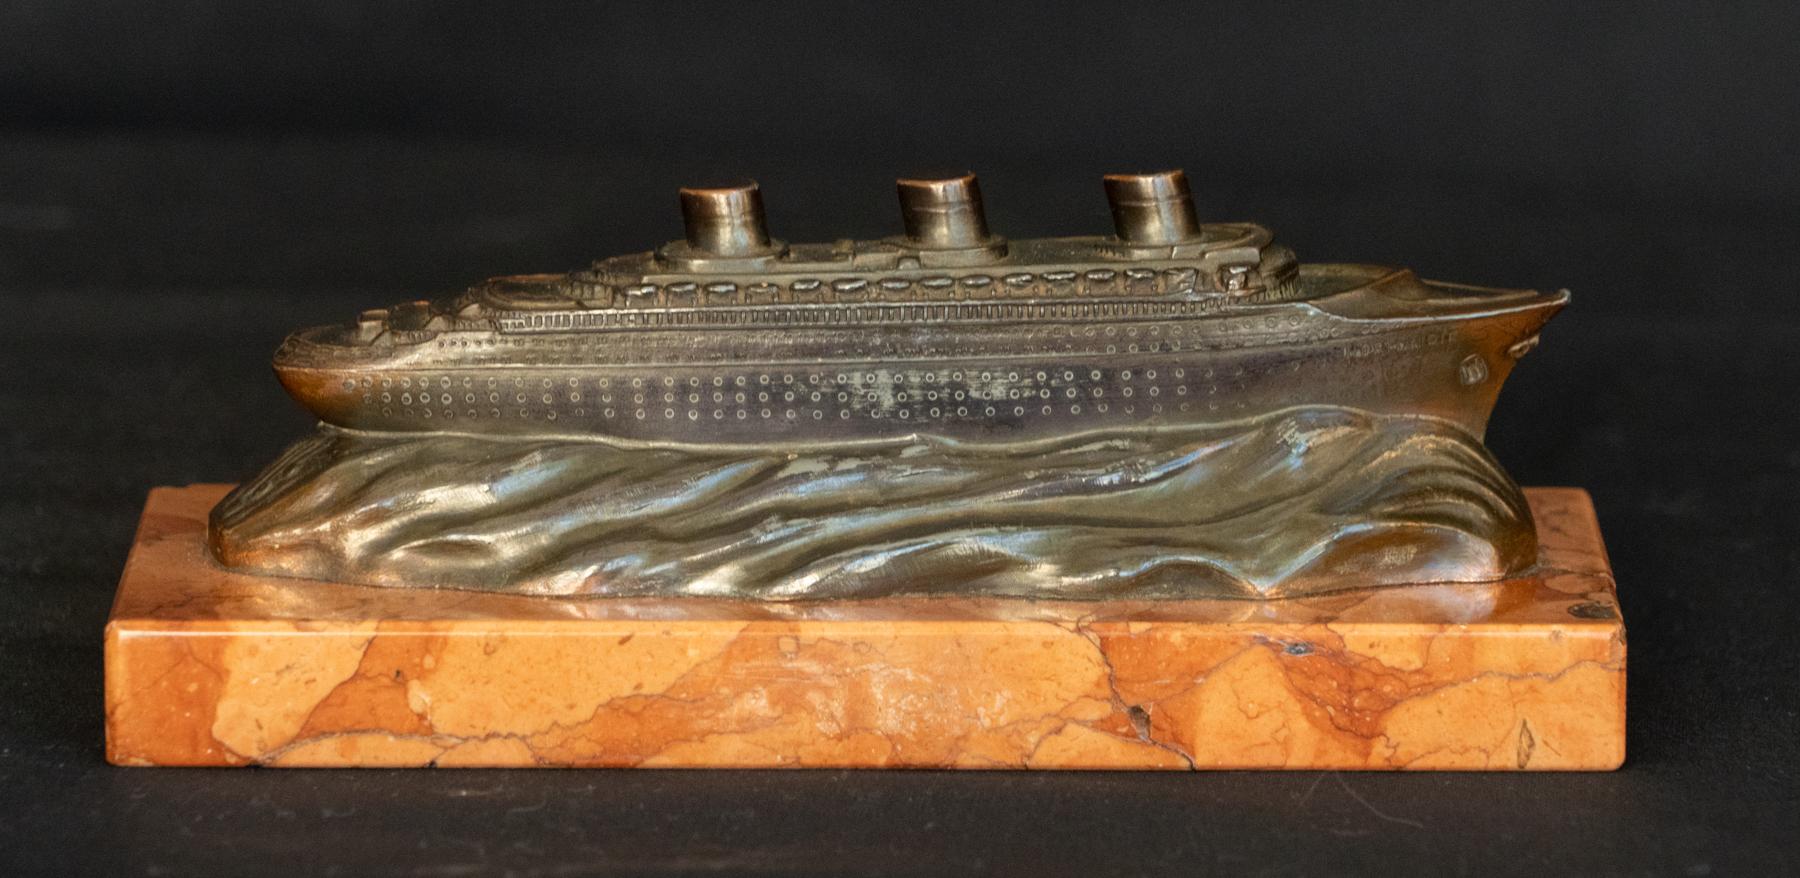 Modèle en bronze monté du SS Normandie en mer. La commémoration du SS Normandie (1932 - 1946)  lors du voyage inaugural Circa 1935. 
Bronzé  / MATERIAL avec de bons détails. Patine d'usage avec marques d'outils et d'usure. Monté sur un socle en